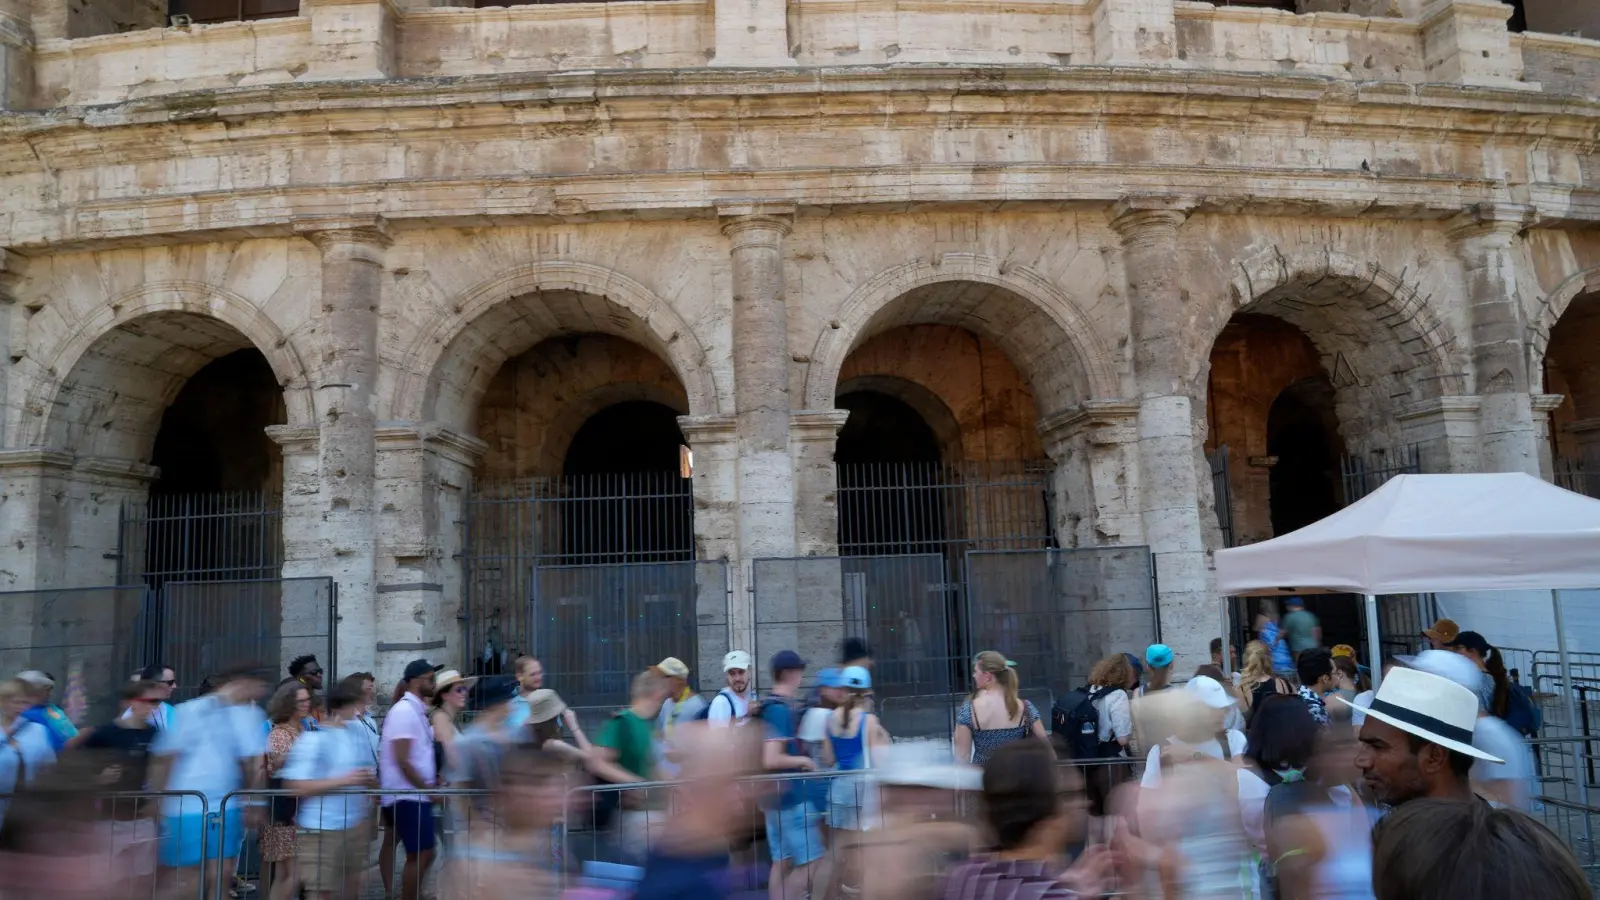 Das rund 2000 Jahre alte Kolosseum gehört zu den beliebtesten Touristenattraktionen in Italien und gilt als das Symbol Roms. (Foto: Andrew Medichini/AP/dpa)